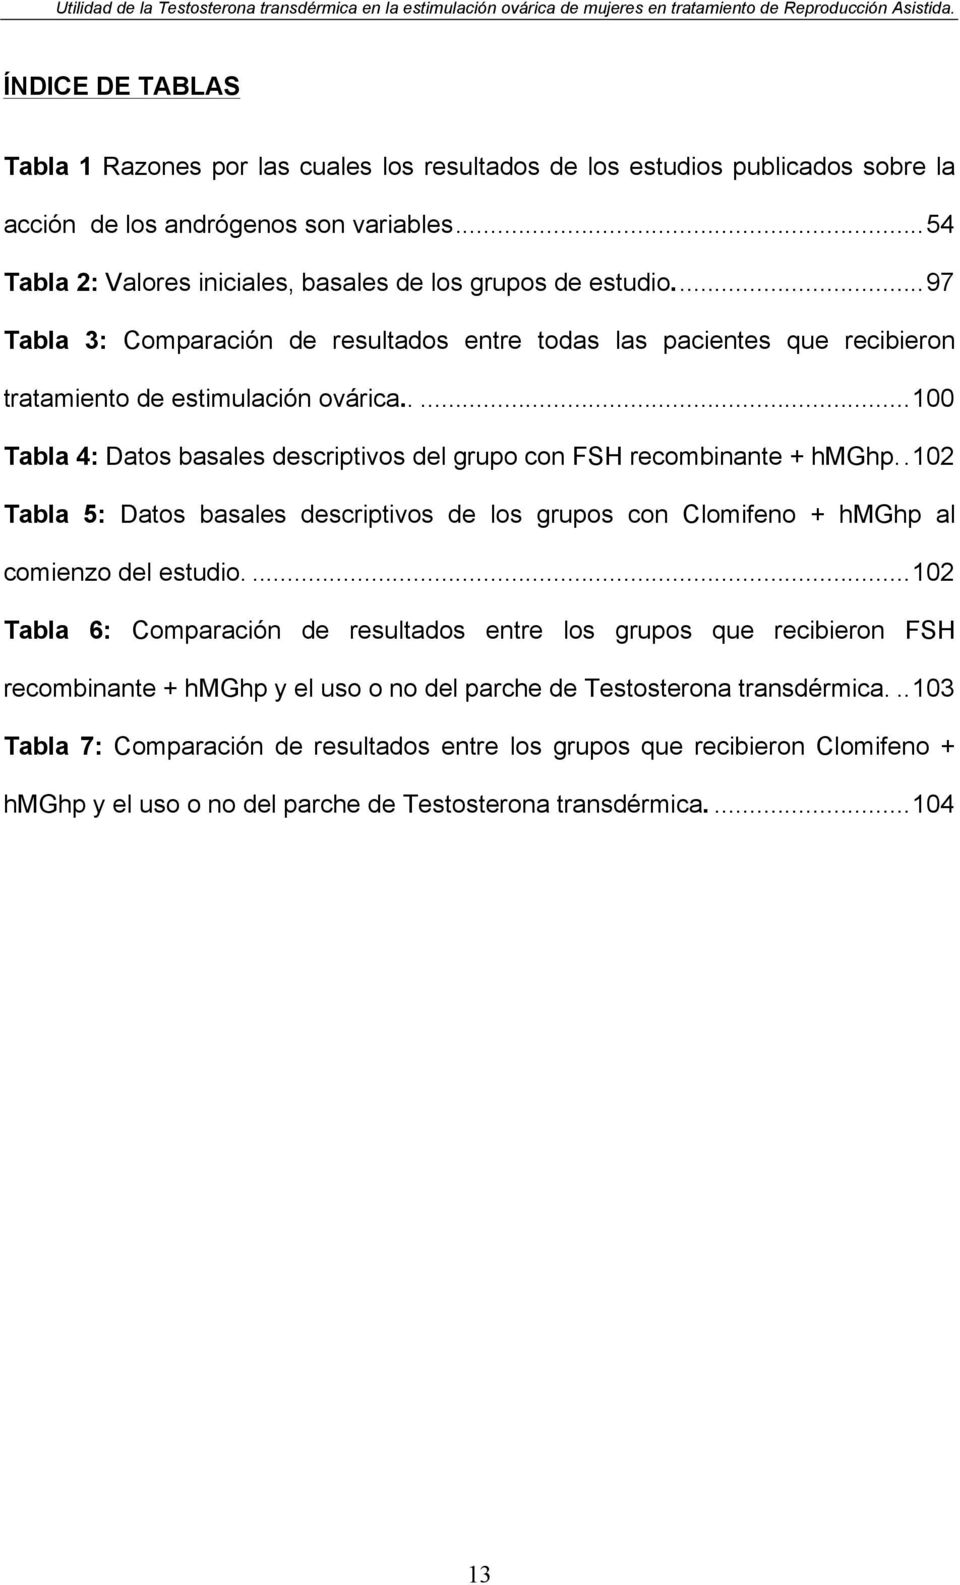 .... 100 Tabla 4: Datos basales descriptivos del grupo con FSH recombinante + hmghp.. 102 Tabla 5: Datos basales descriptivos de los grupos con Clomifeno + hmghp al comienzo del estudio.